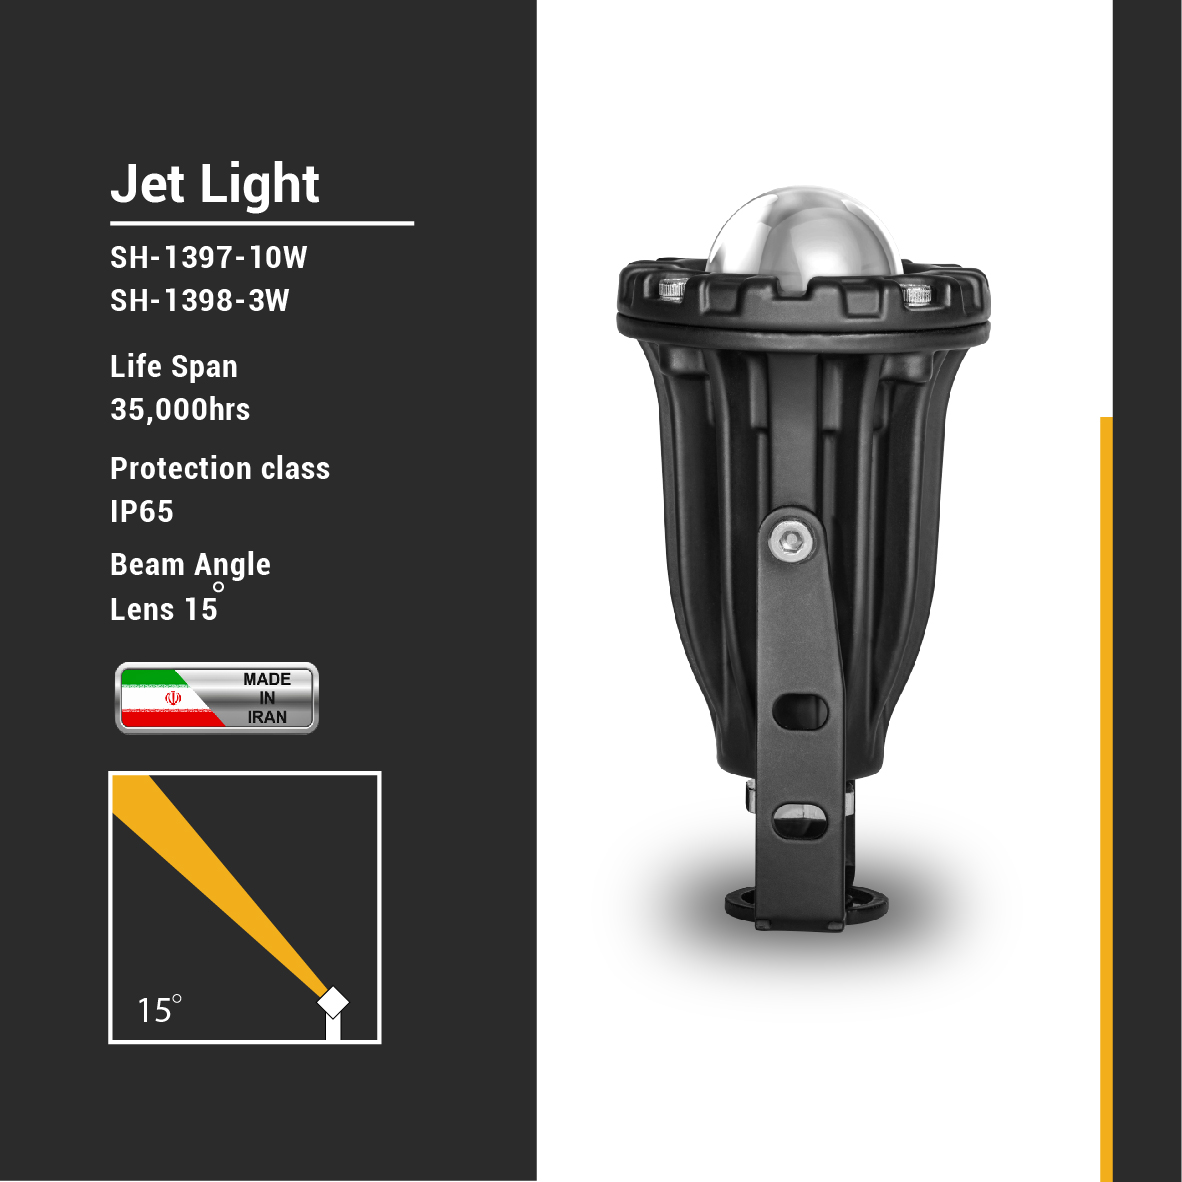  SH-Jet Light-10W